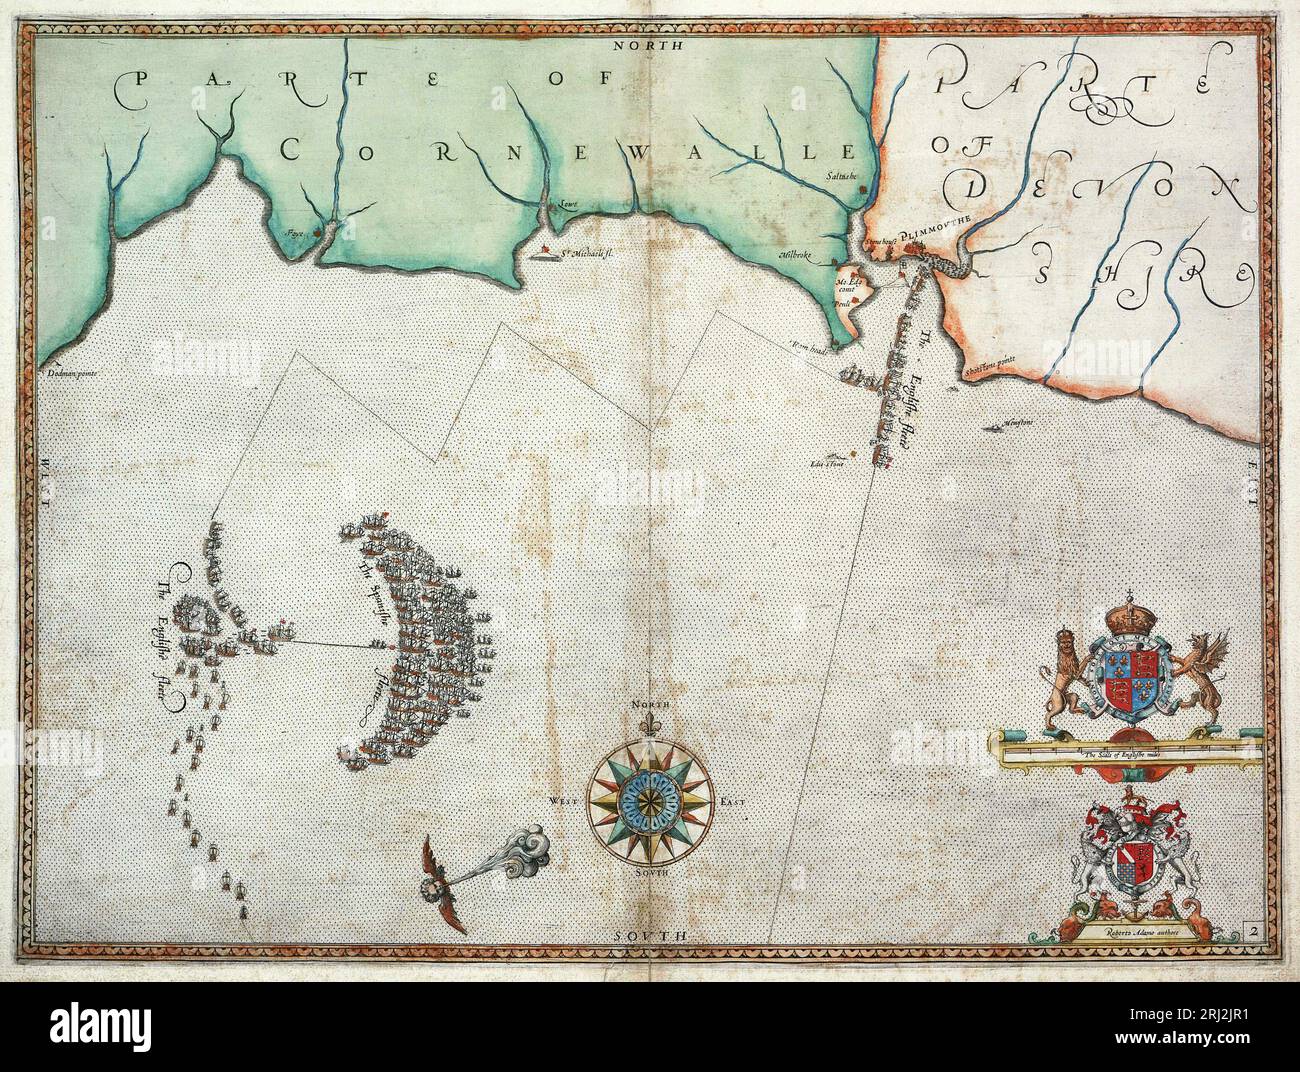 L'Armada espagnole et la flotte anglaise approchent de Plymouth du 30 au 31 juillet 1588, comme le montre une carte faite en 1590, deux ans seulement après la défaite de l'Armada espagnole le 8 août 1588. Banque D'Images